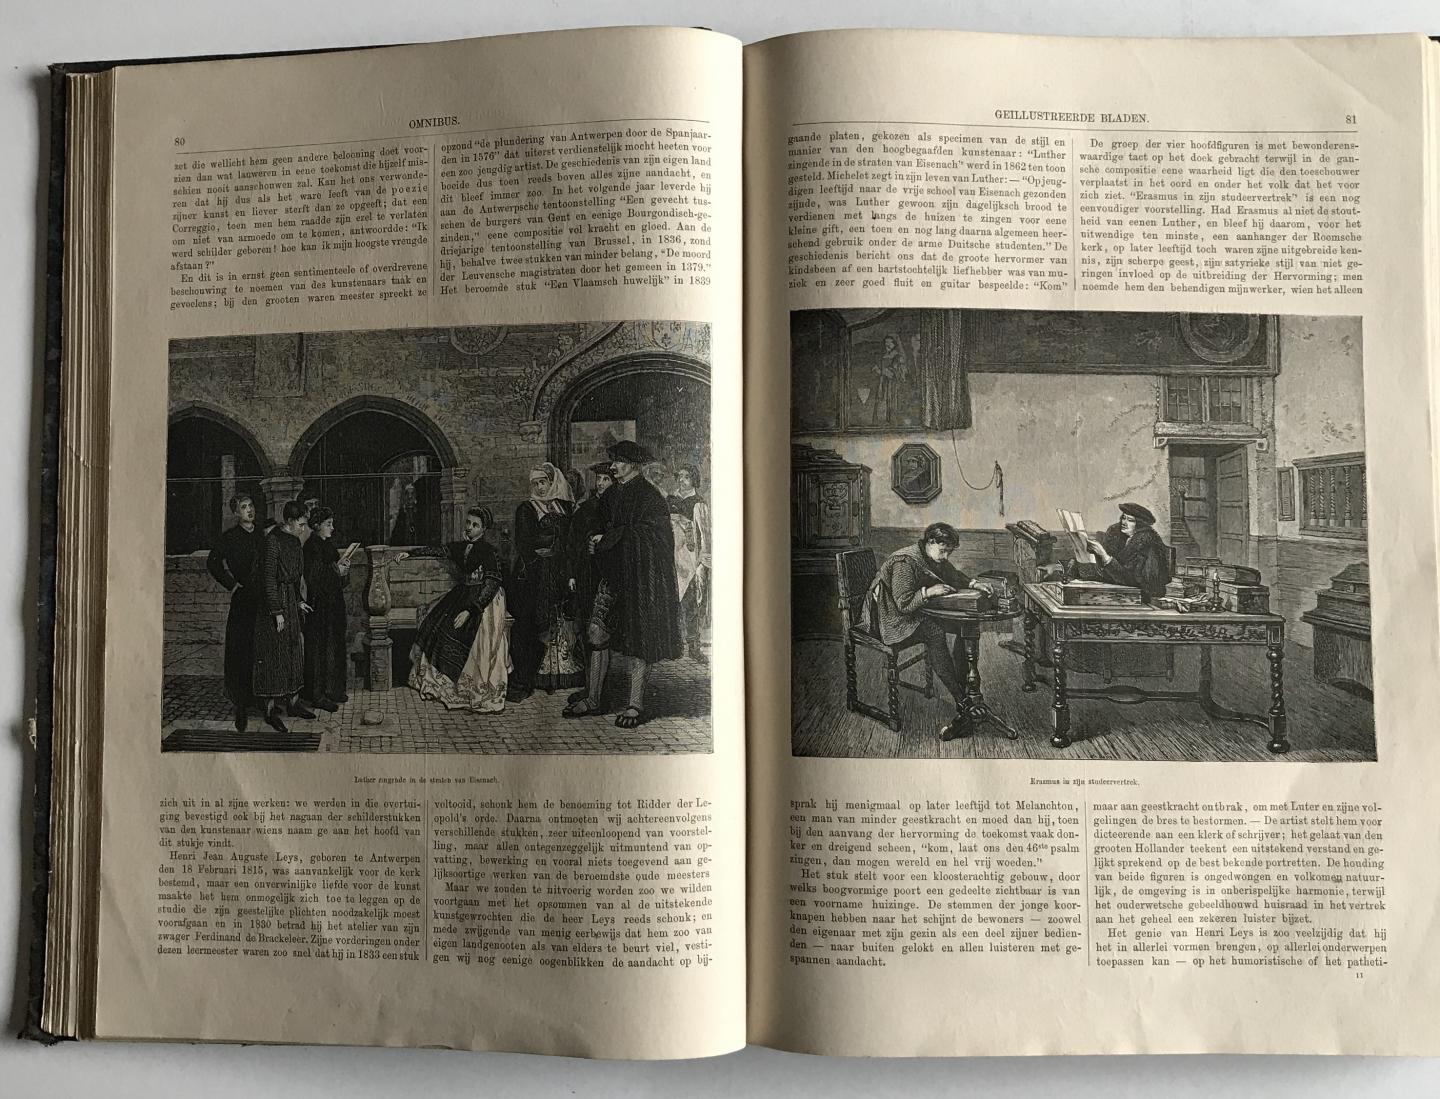  - Omnibus 1868 - Geillustreerde bladen aan schoone letteren en kunst gewijd